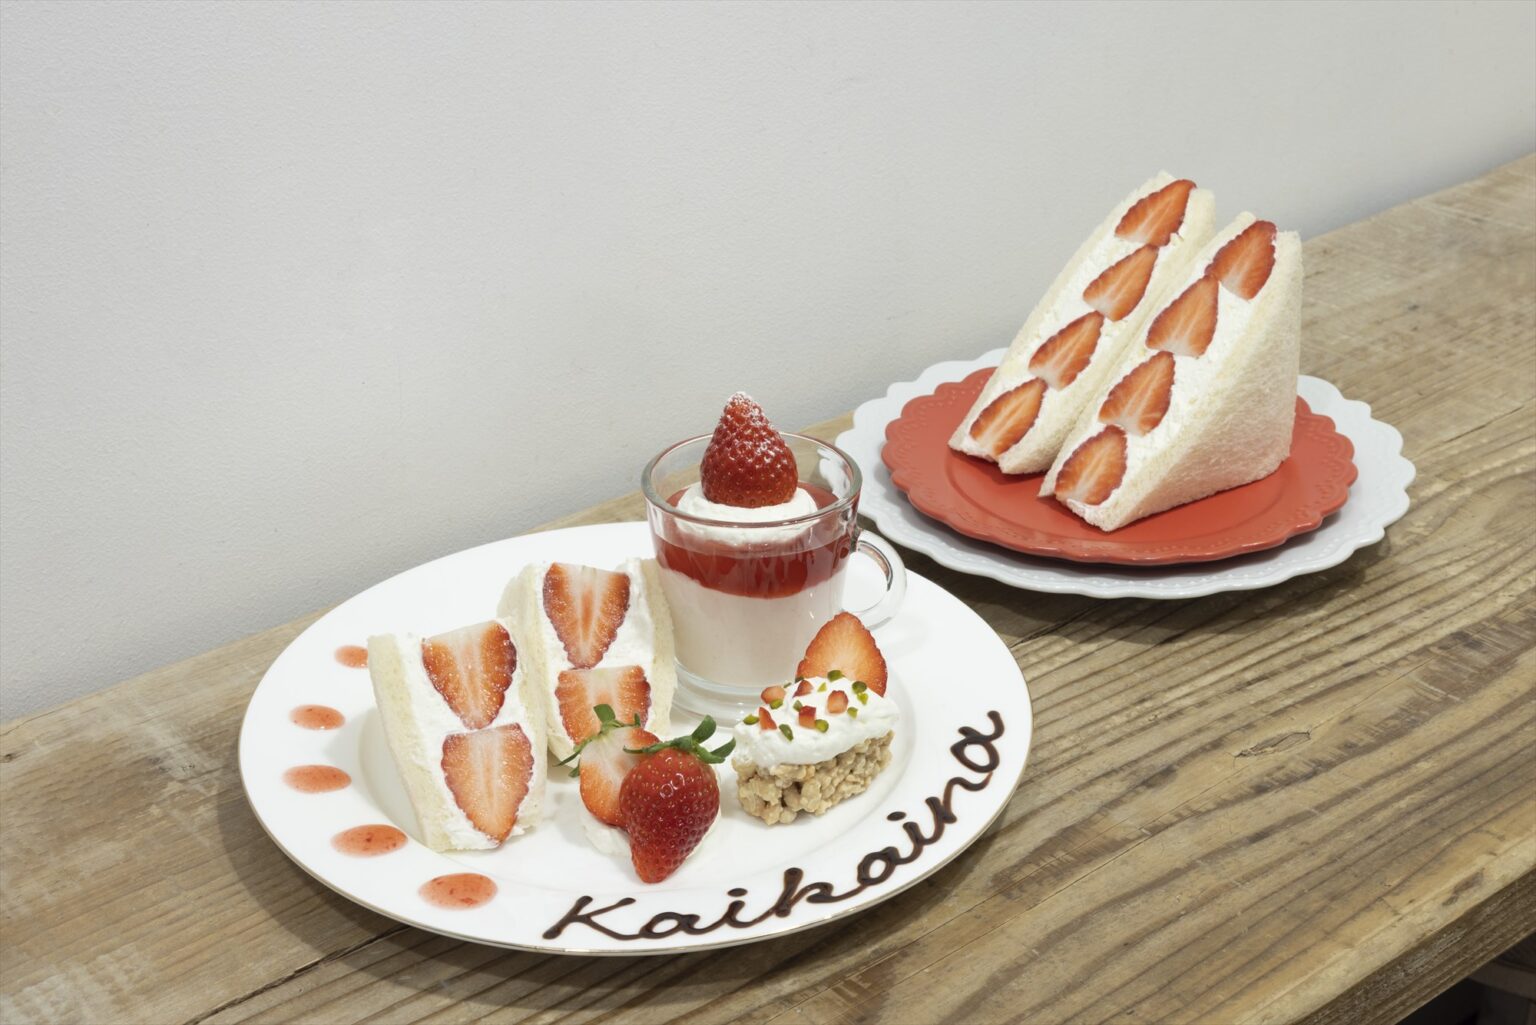 〈Kaikaina〉の「ホワイトチョコレートいちごさんど」（奥／テイクアウト900円、写真は2人前）
と「“いちごさん”使用　贅沢いちごプレート」（手前／イートイン1,700円）。